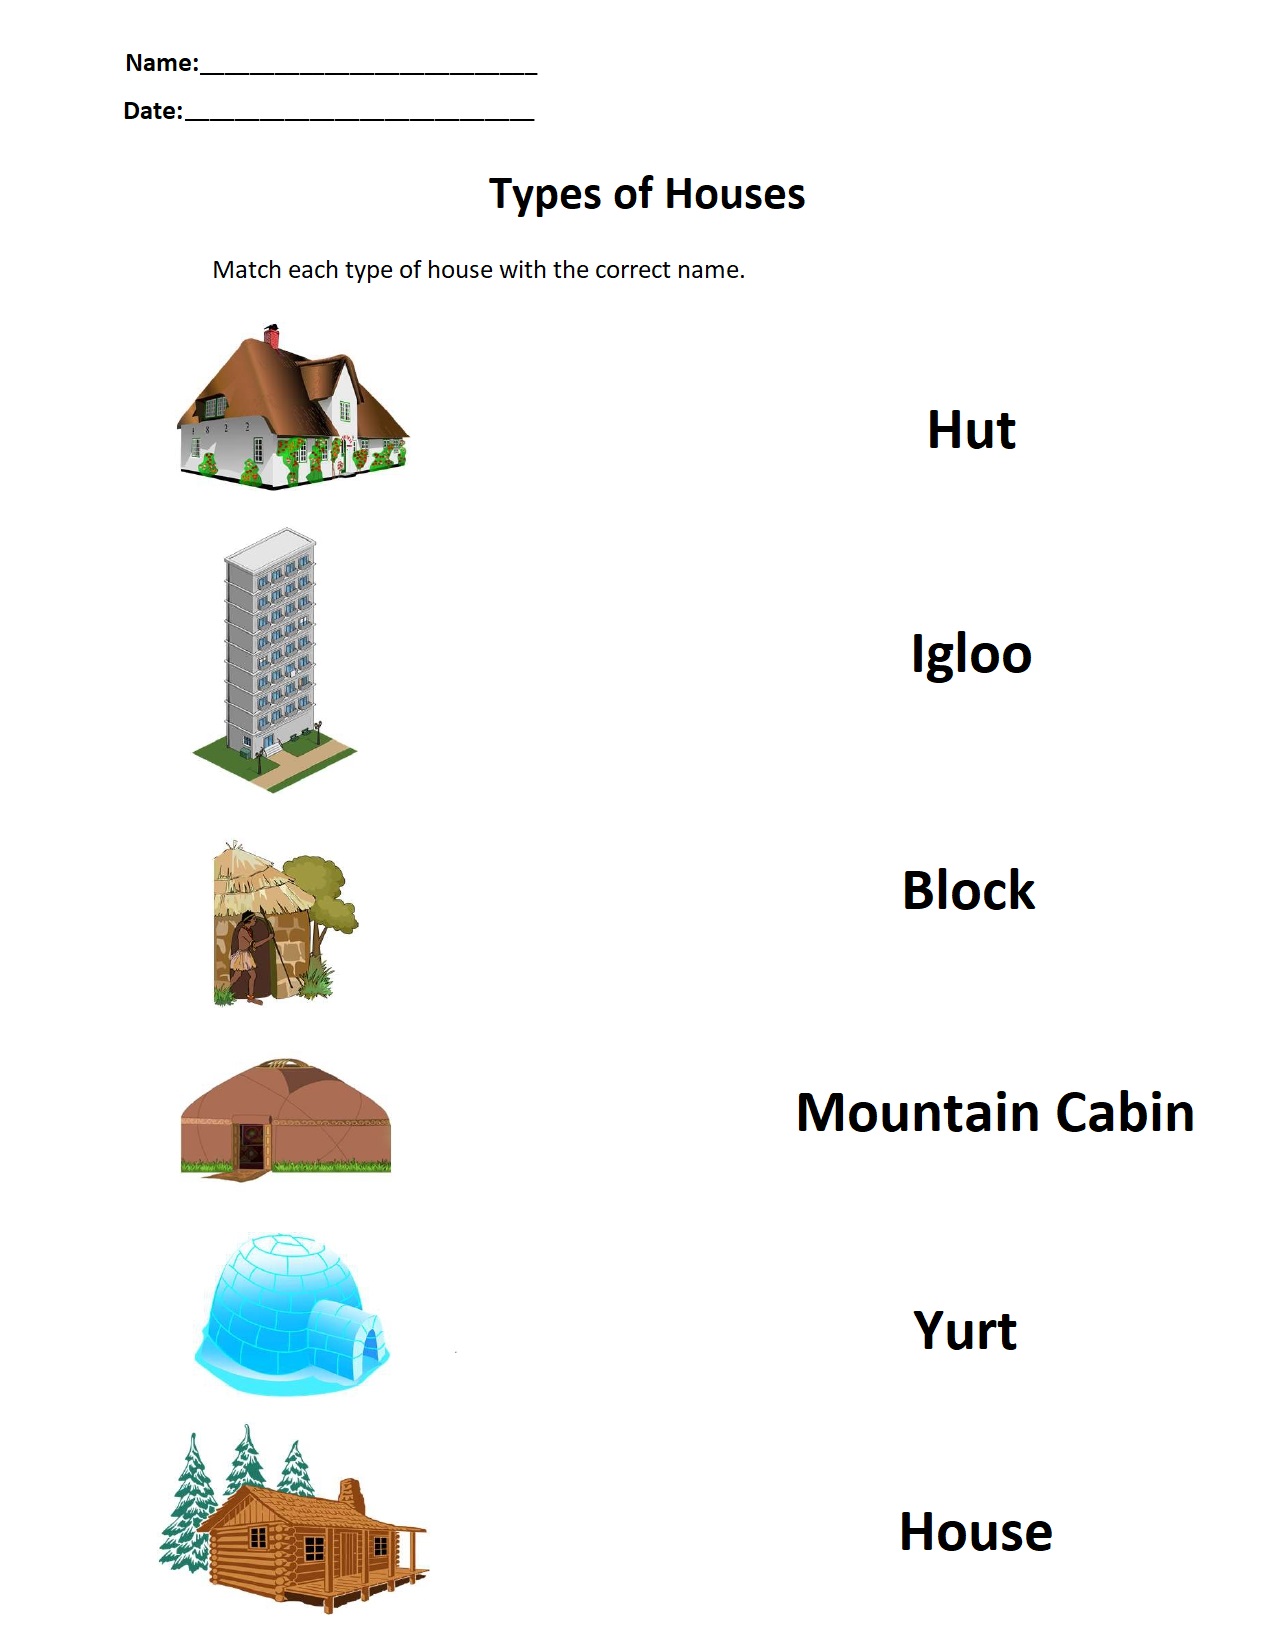 Types of Houses.jpg